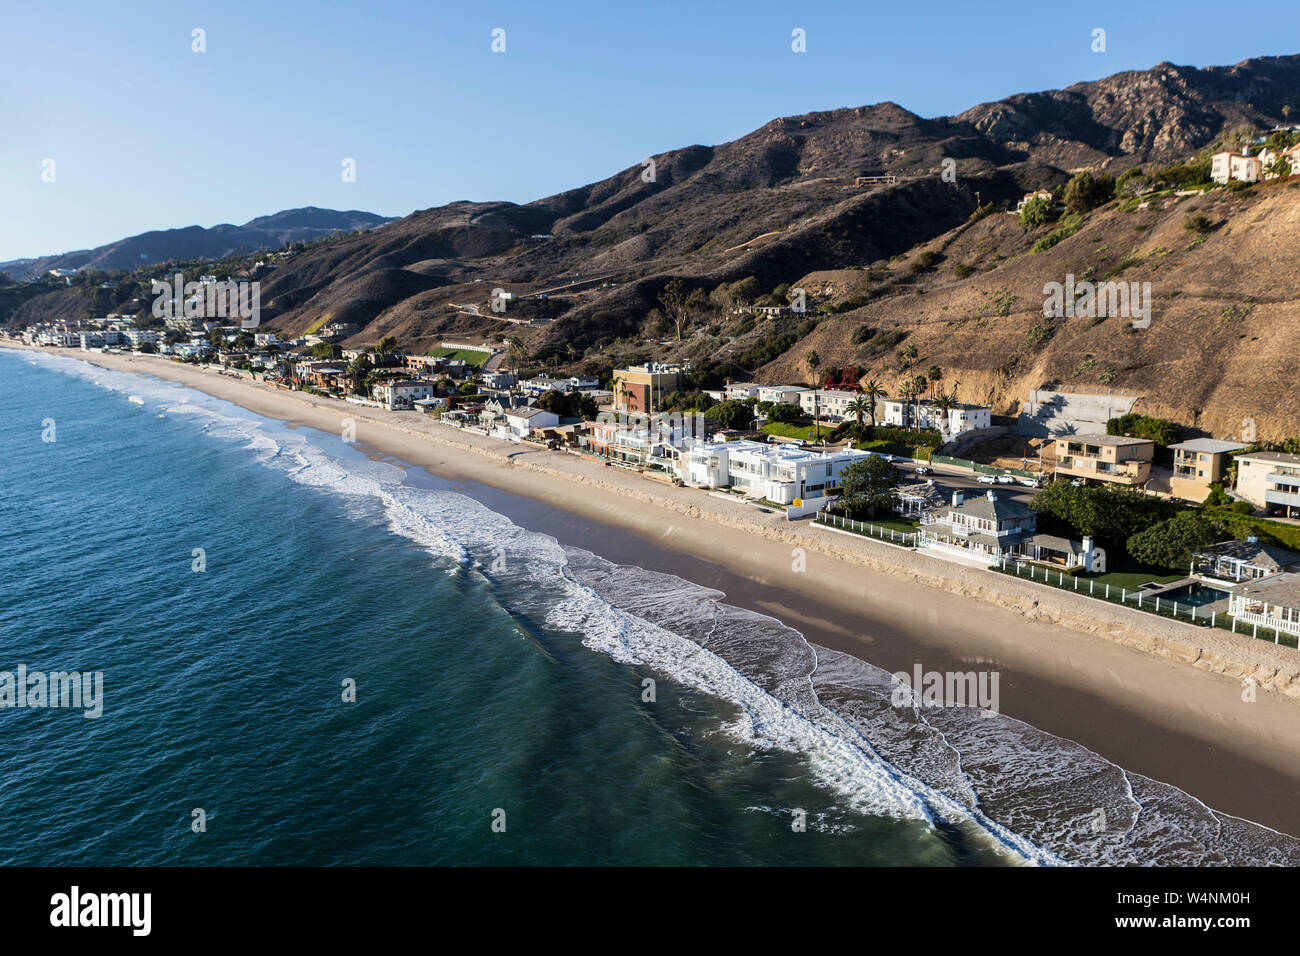 Vue aérienne de la plage haut de maisons et les montagnes de Santa Monica, près de Los Angeles dans la ville pittoresque de Malibu, Californie. Banque D'Images